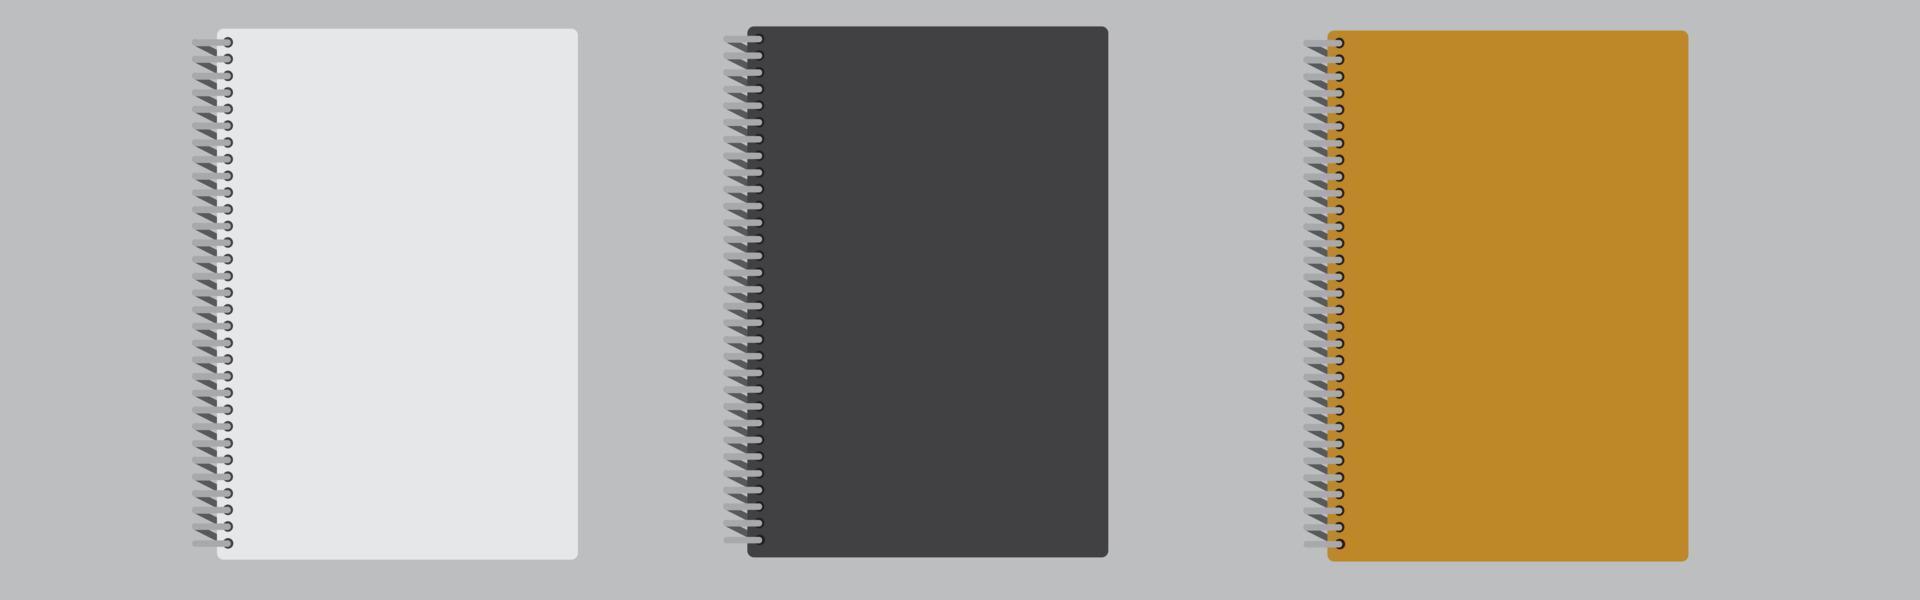 caderno em branco realista. bloco de notas simulado com sombra isolada em fundo isolado vetor